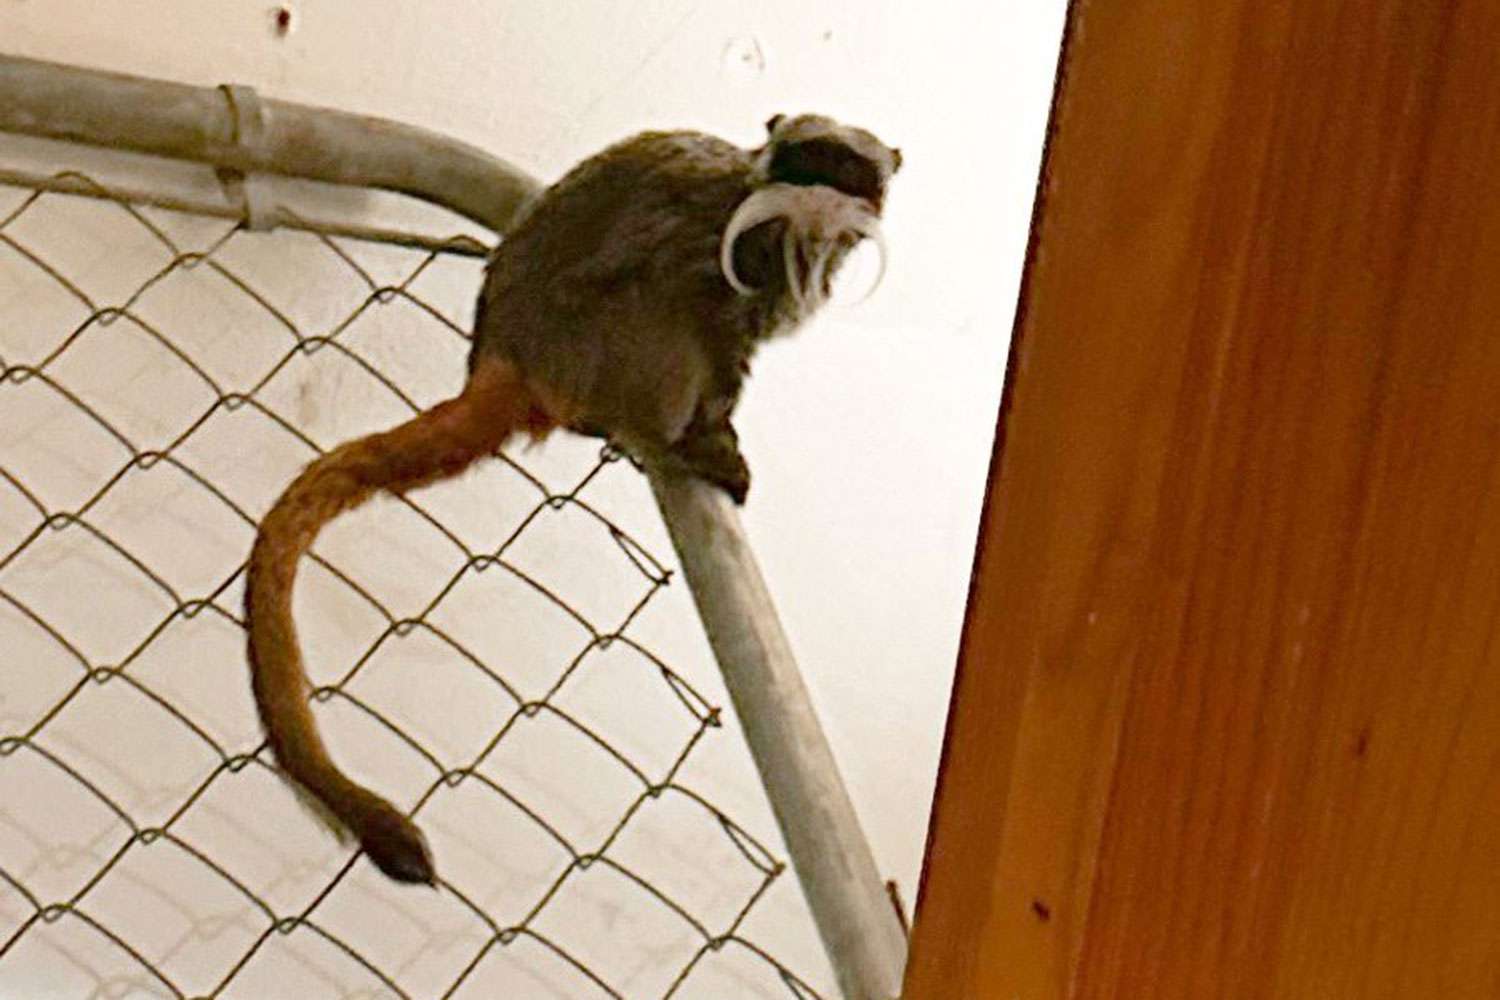 Zoológico de Dallas anuncia 'mudanças significativas' no sistema de segurança após a recuperação de macacos micos desaparecidos